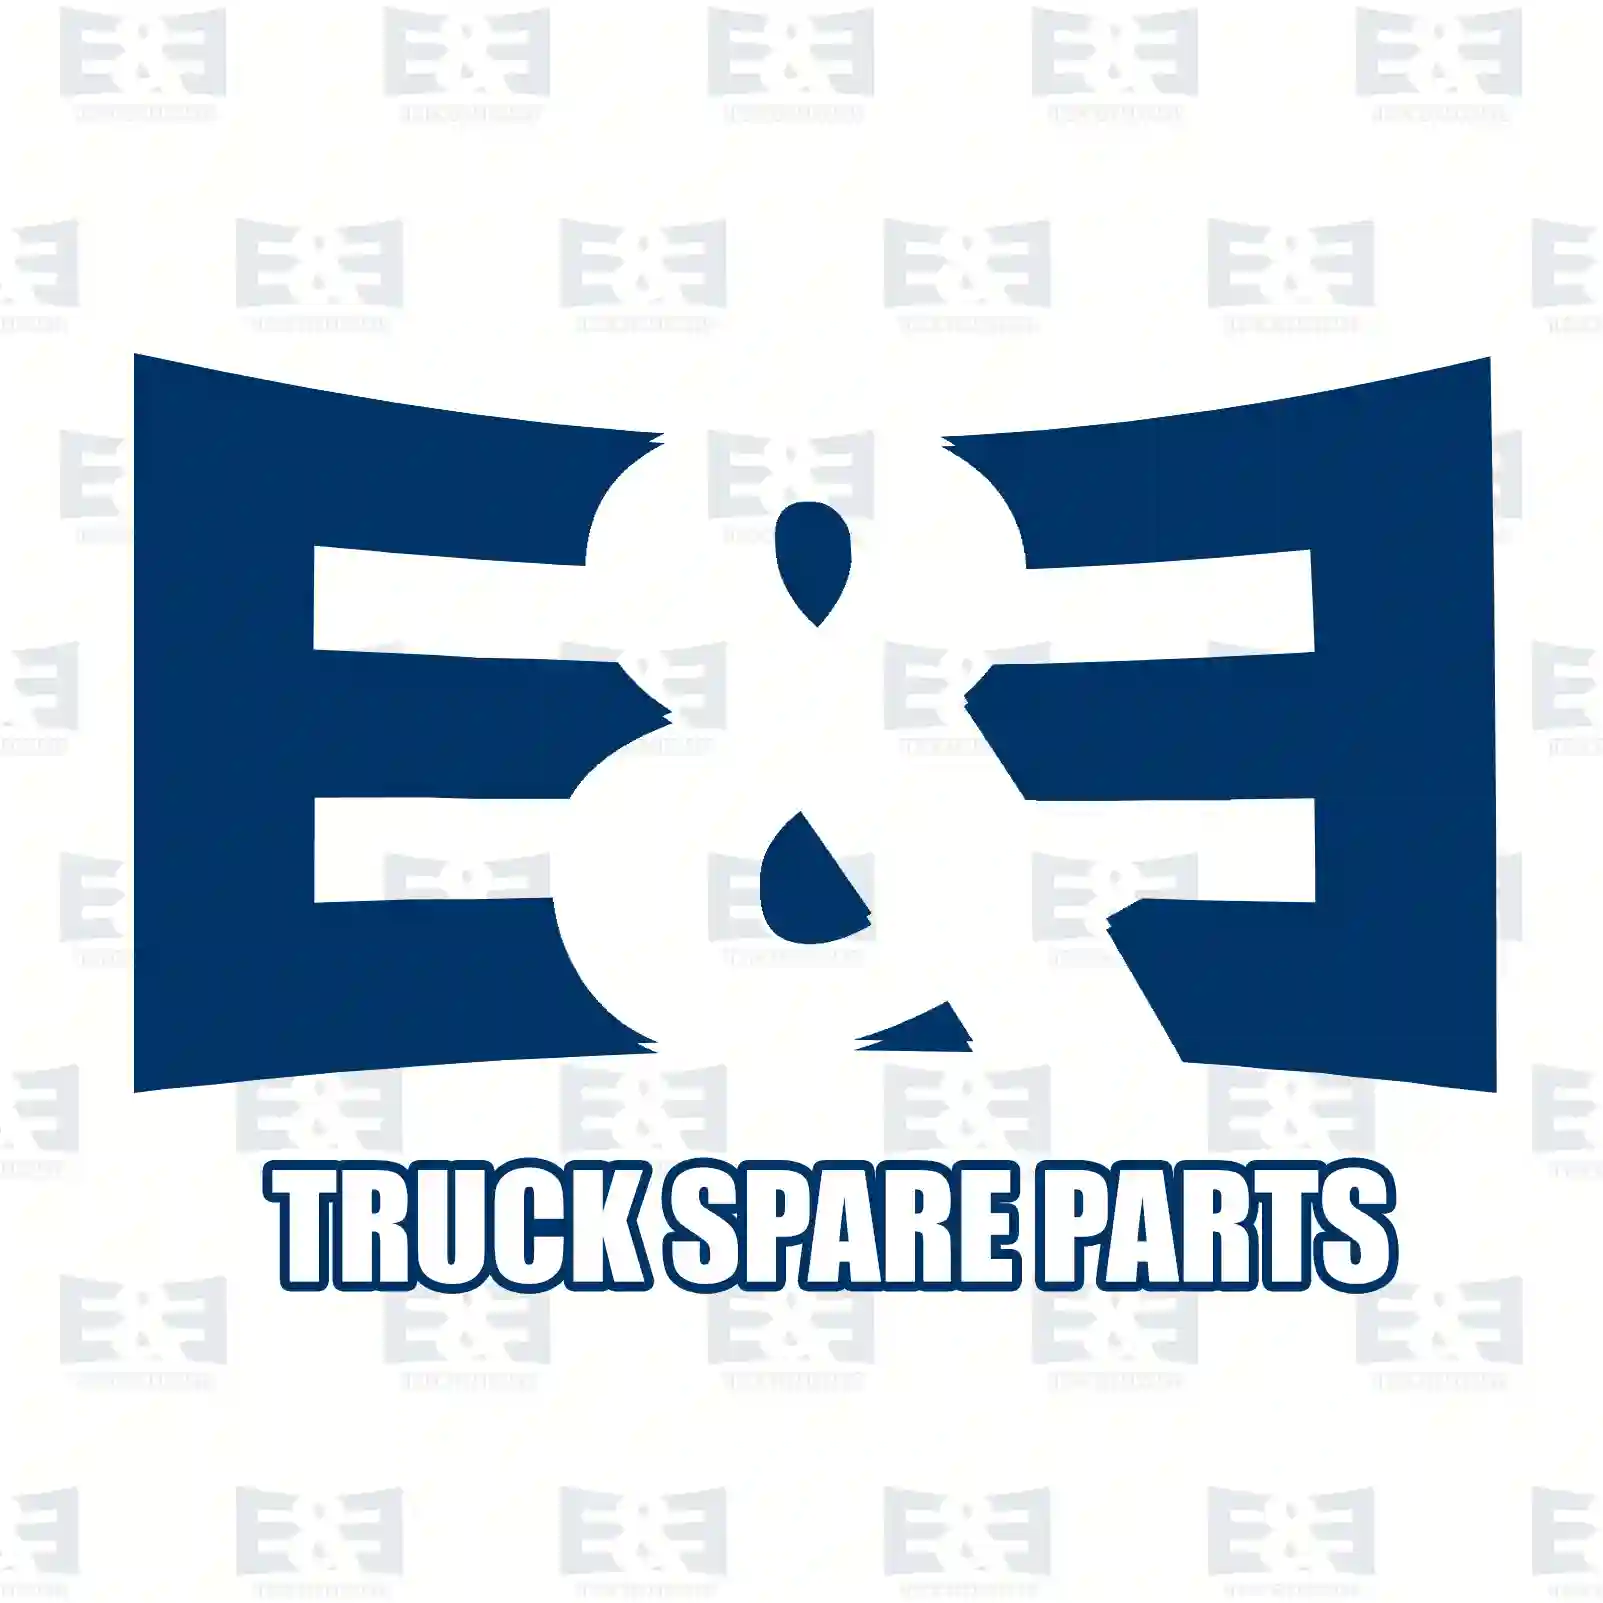 Cabin shock absorber, 2E2276462, 81417226068 ||  2E2276462 E&E Truck Spare Parts | Truck Spare Parts, Auotomotive Spare Parts Cabin shock absorber, 2E2276462, 81417226068 ||  2E2276462 E&E Truck Spare Parts | Truck Spare Parts, Auotomotive Spare Parts